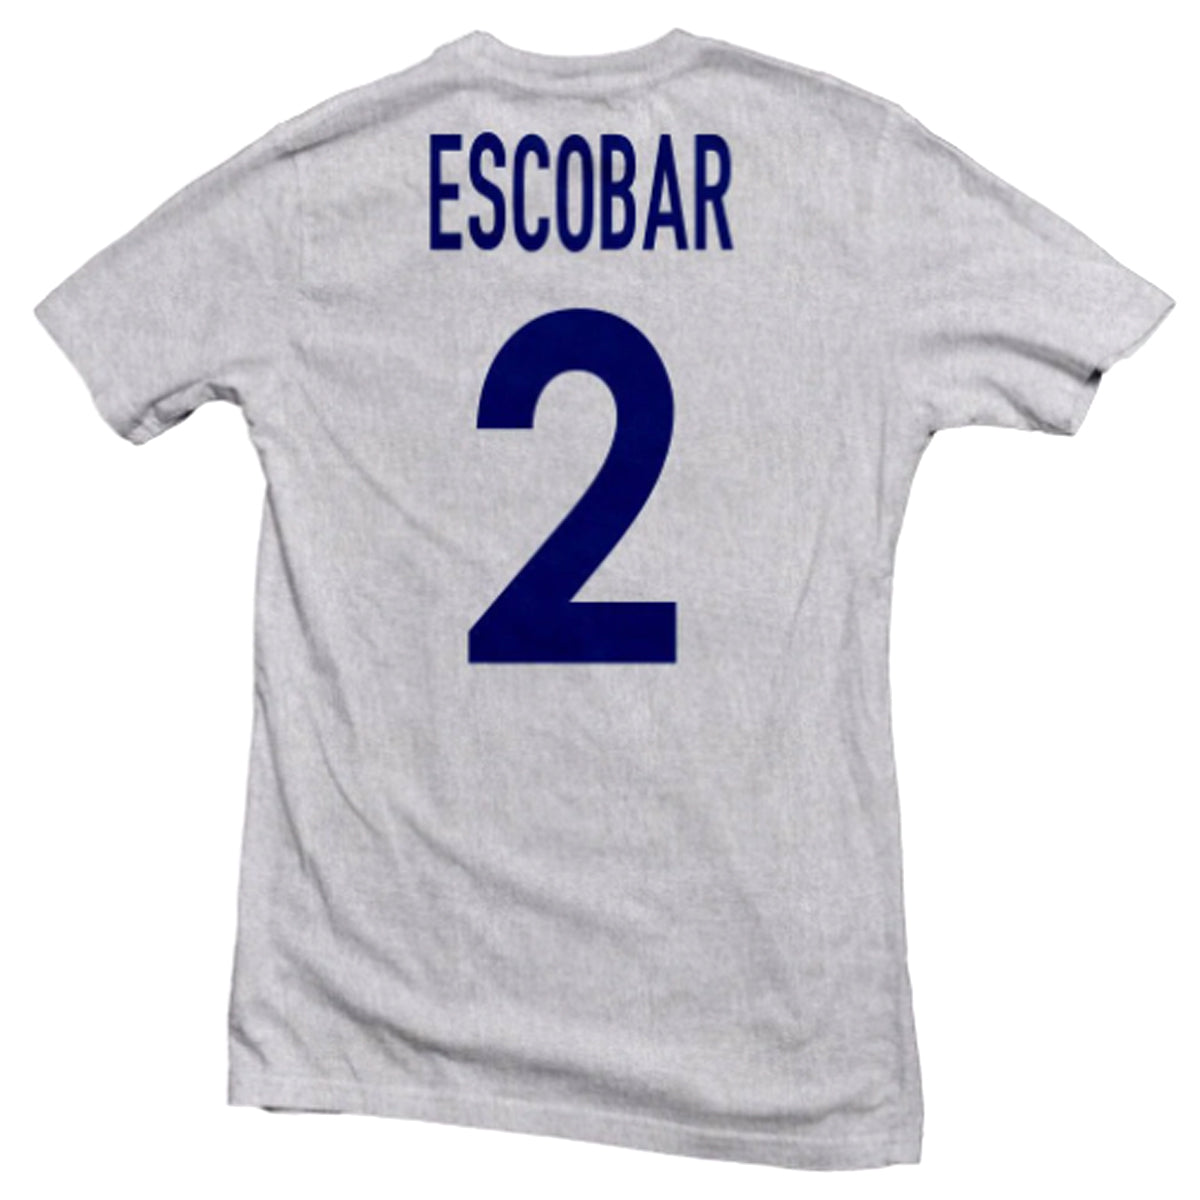 Colombia Los Cafeteros Legend Tee: Escobar T-Shirt 411 Ash Grey Youth Medium 